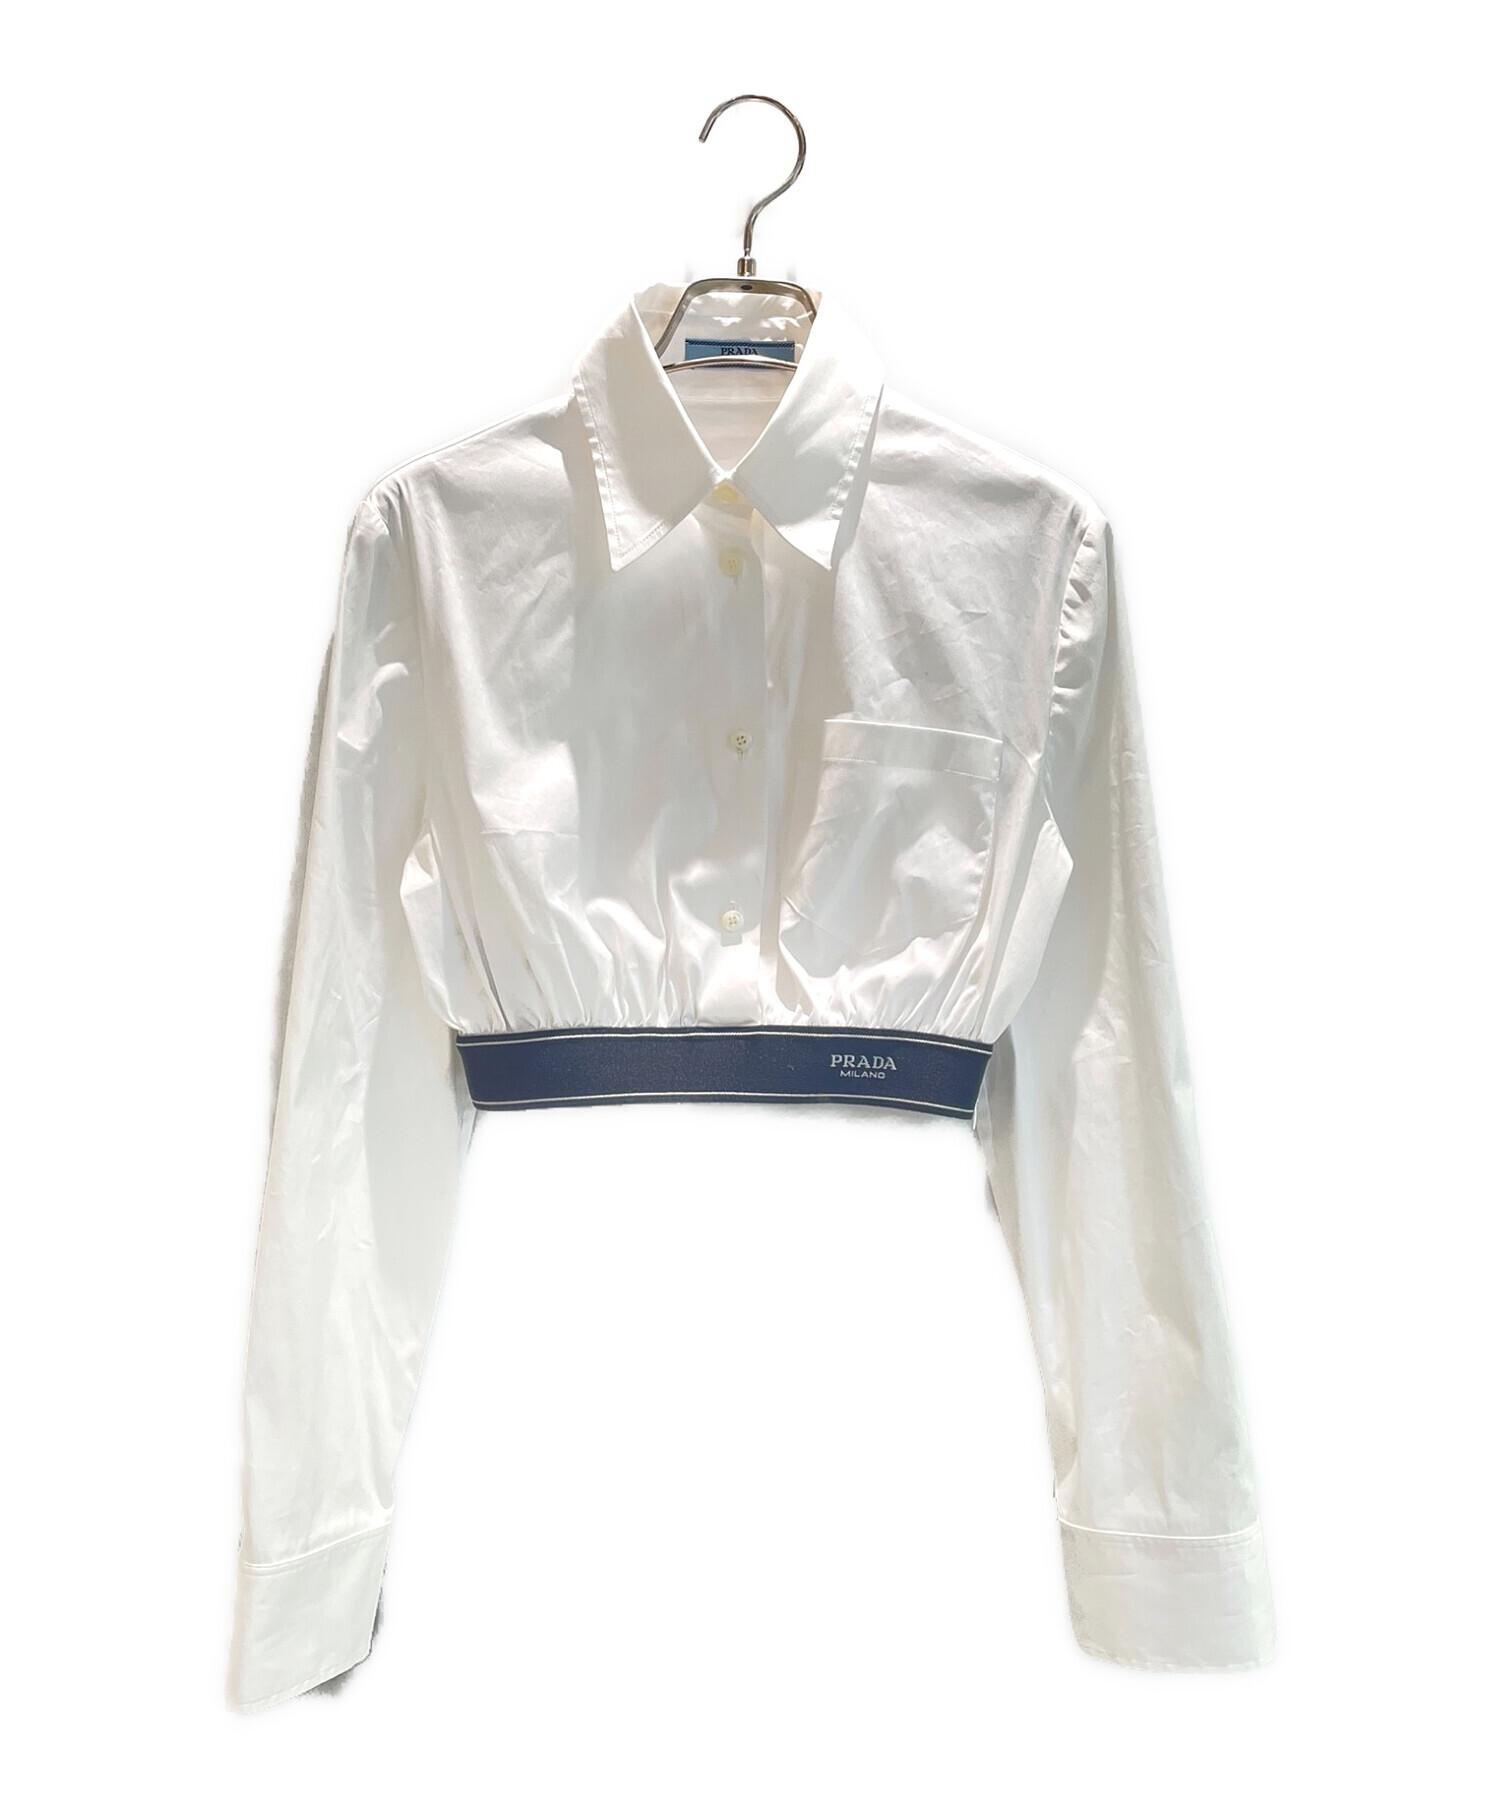 PRADA (プラダ) ポプリンストレッチシャツ ホワイト サイズ:38